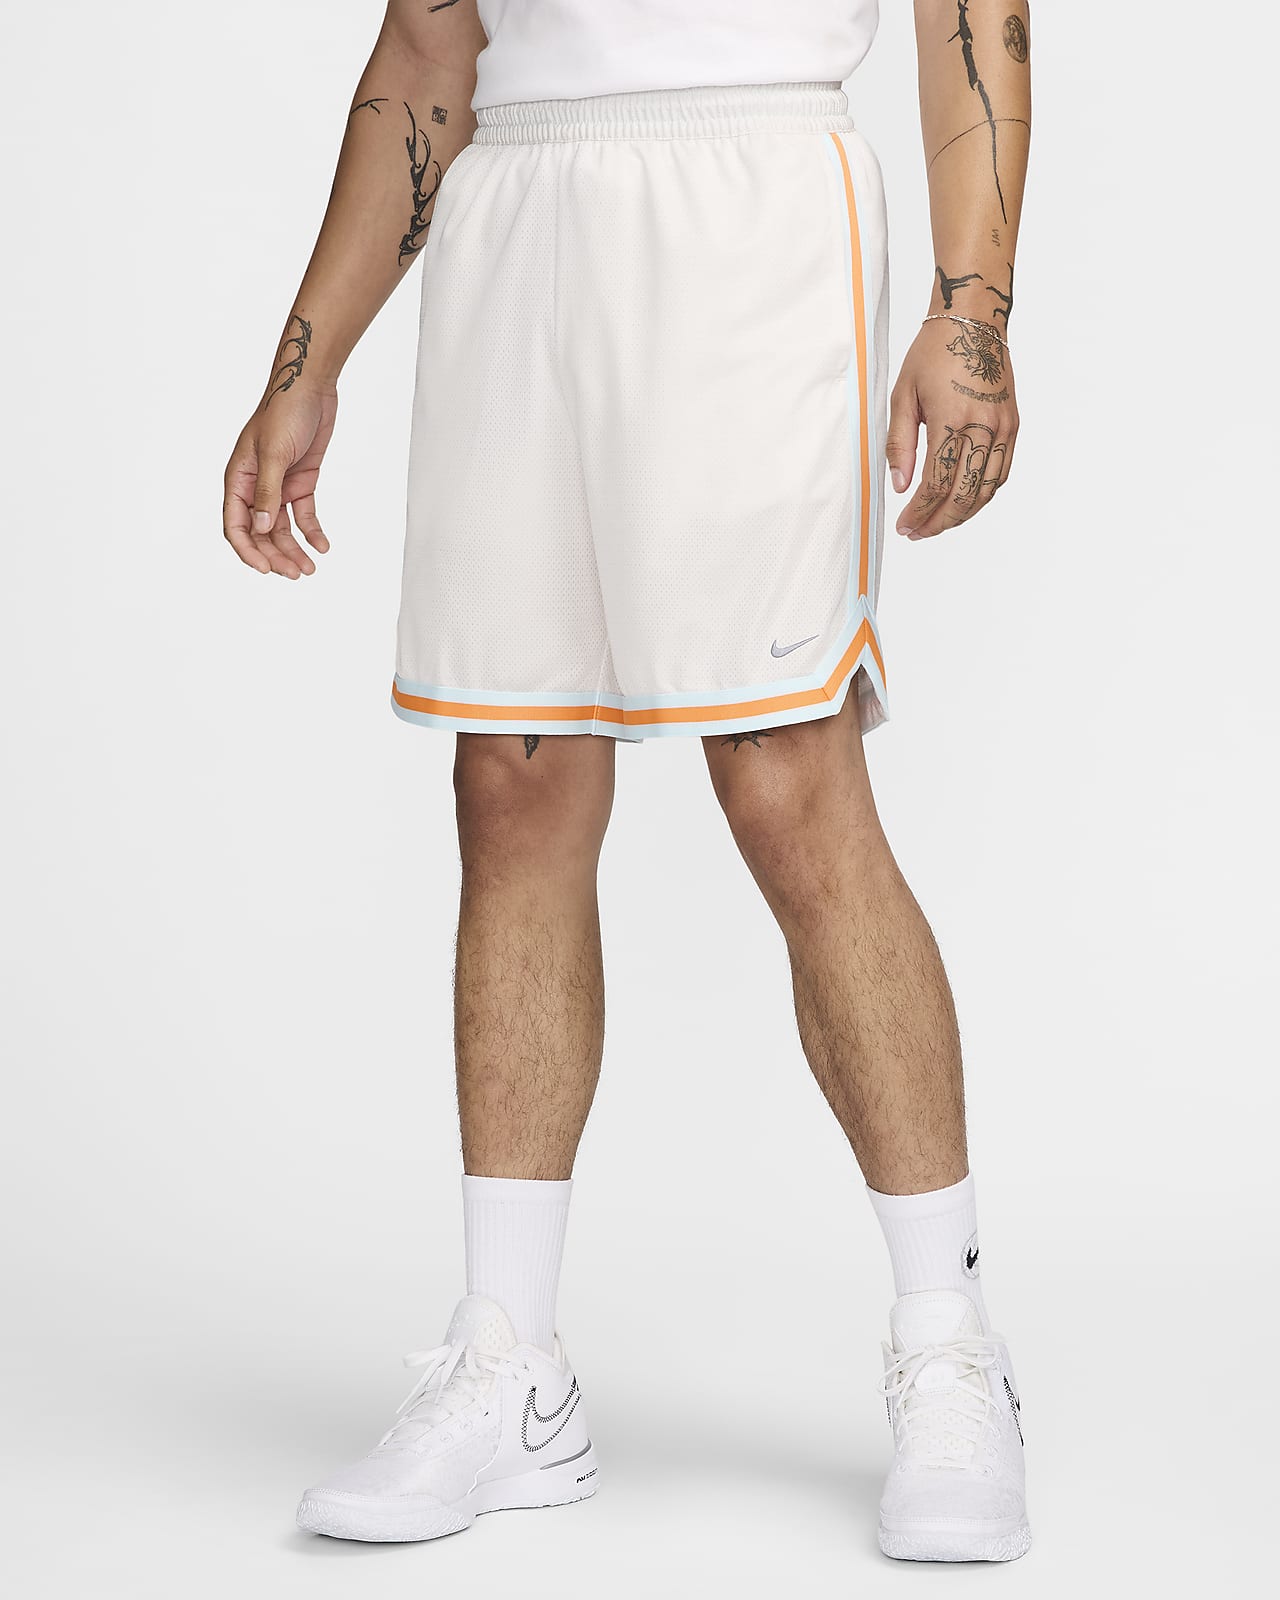 Shorts de básquetbol de 20 cm Dri-FIT para hombre Nike DNA